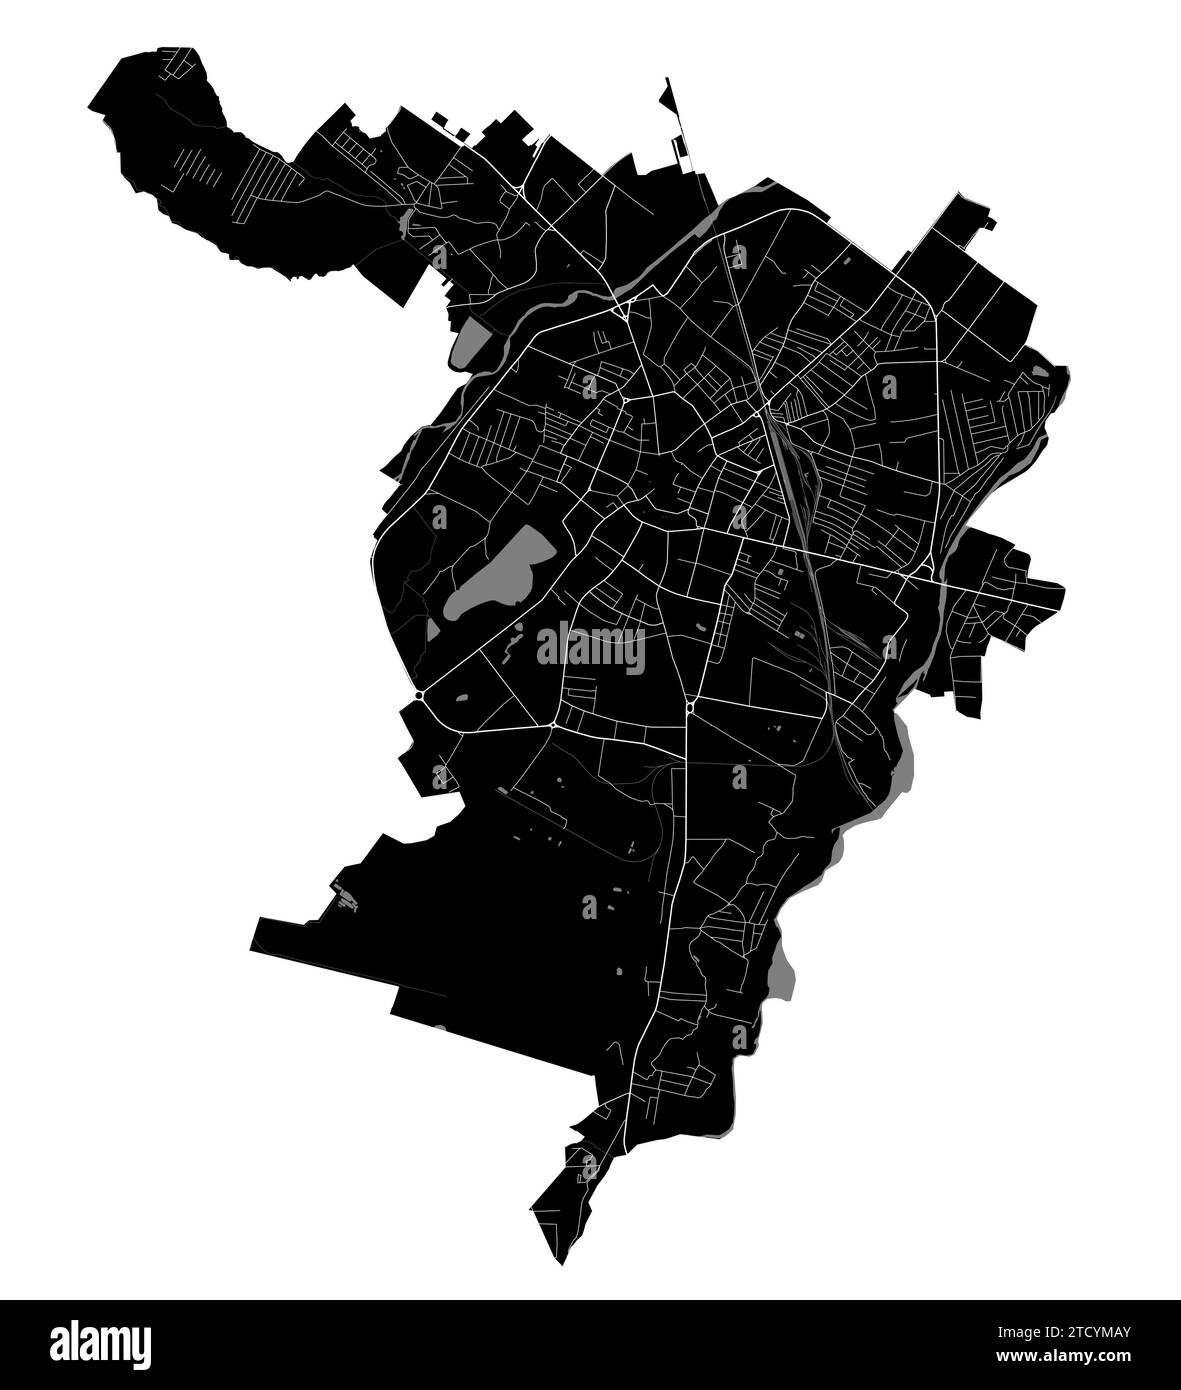 Carte de la ville d'Ivano-Frankivsk, Ukraine. Frontières administratives municipales, carte en noir et blanc avec rivières et routes, parcs et voies ferrées. Vector illust Illustration de Vecteur